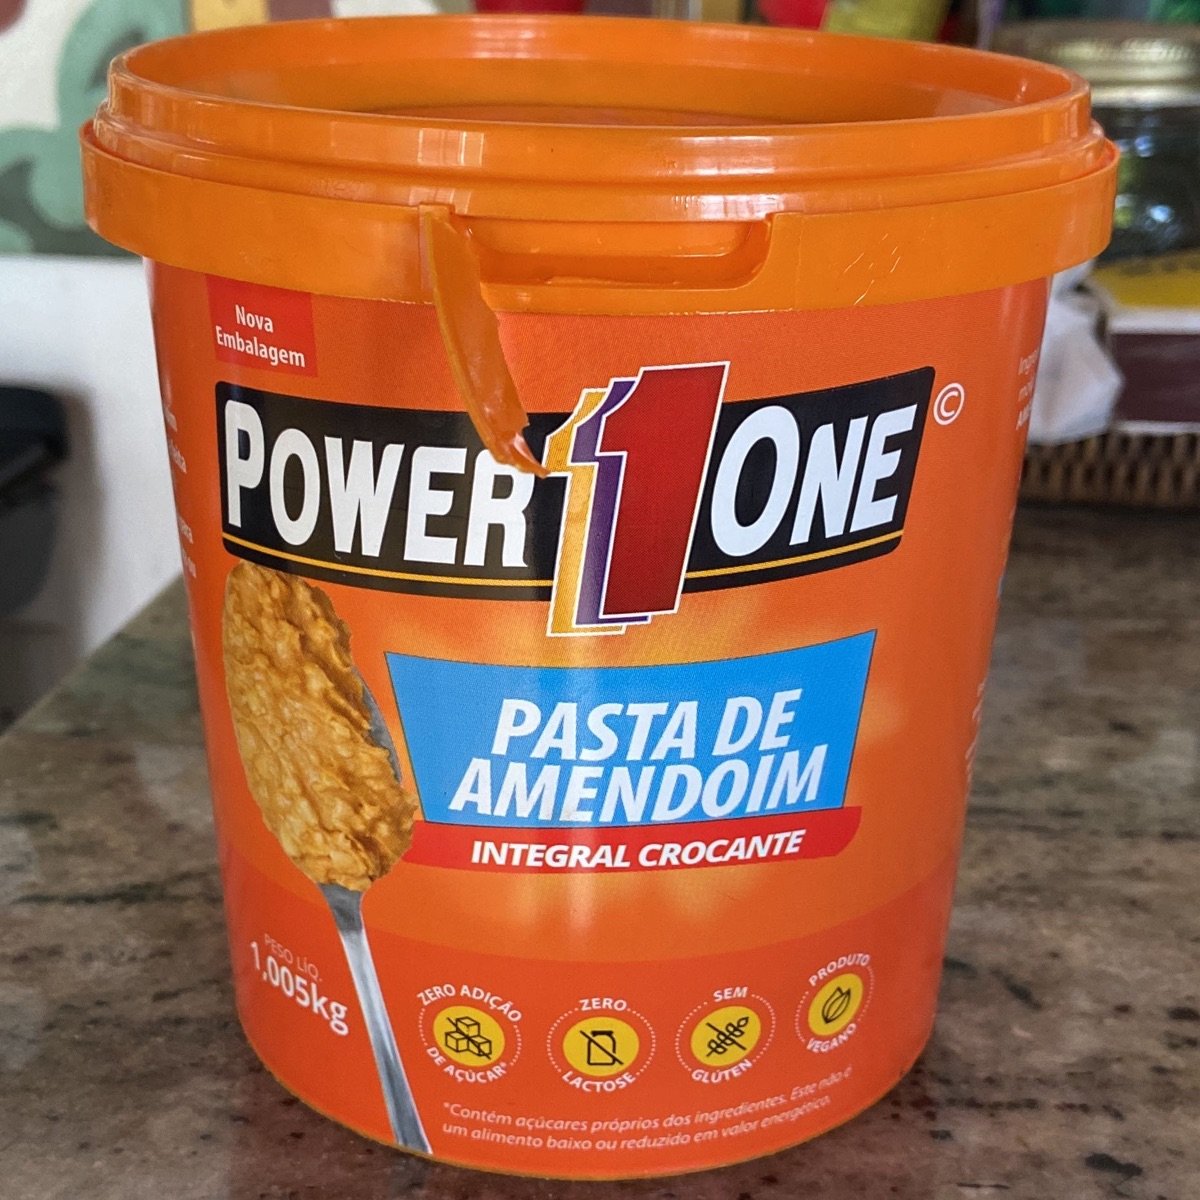 Power1one Pasta de amendoim integral crocante Review